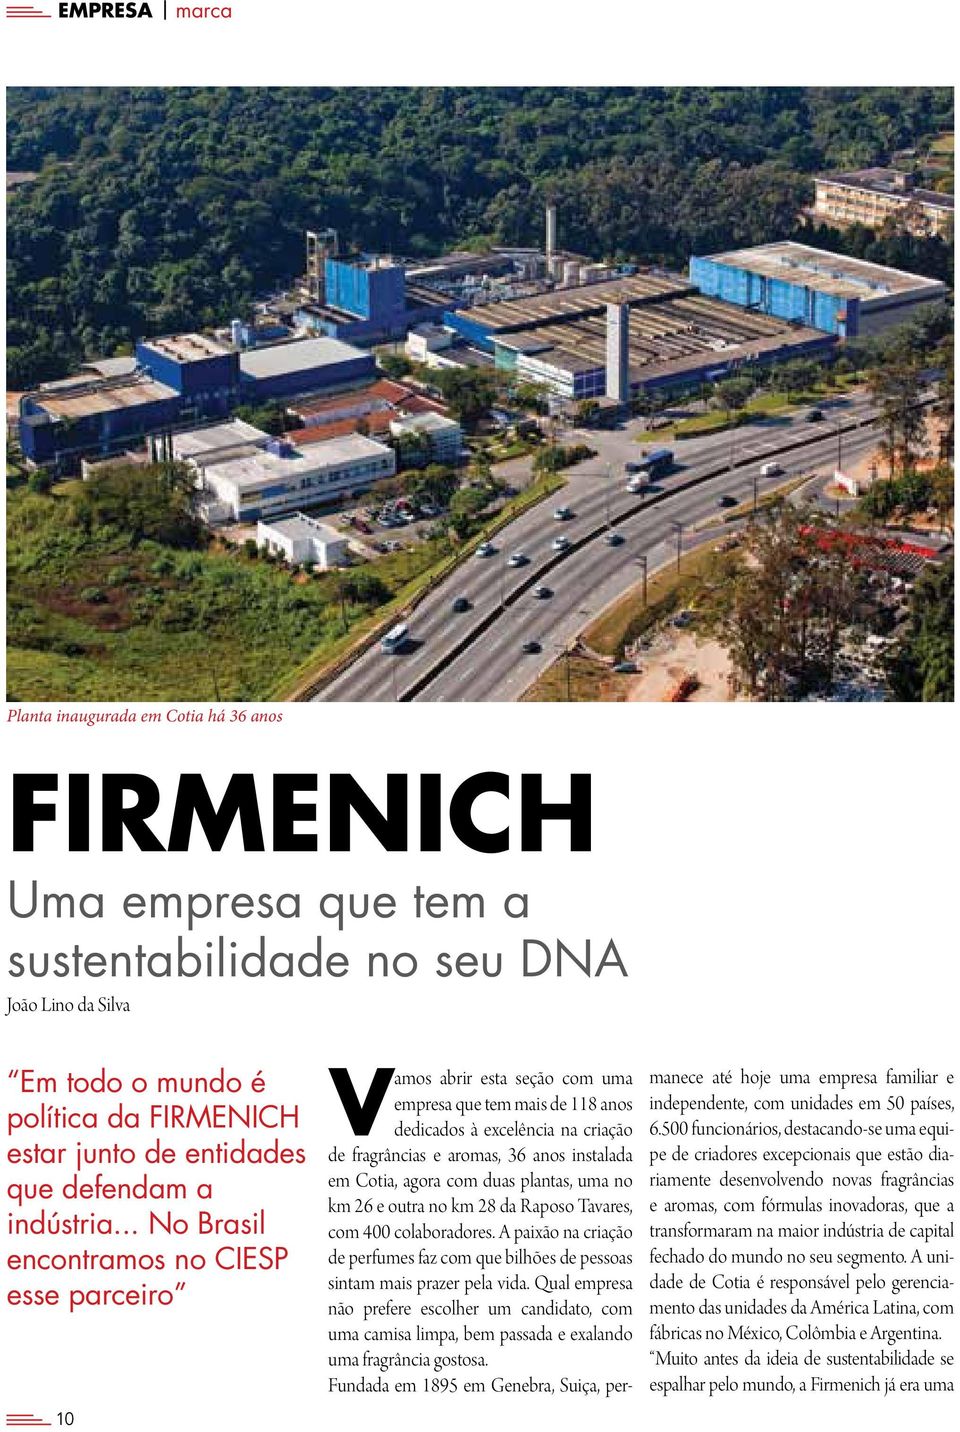 .. No Brasil encontramos no CIESP esse parceiro 10 Vamos abrir esta seção com uma empresa que tem mais de 118 anos dedicados à excelência na criação de fragrâncias e aromas, 36 anos instalada em